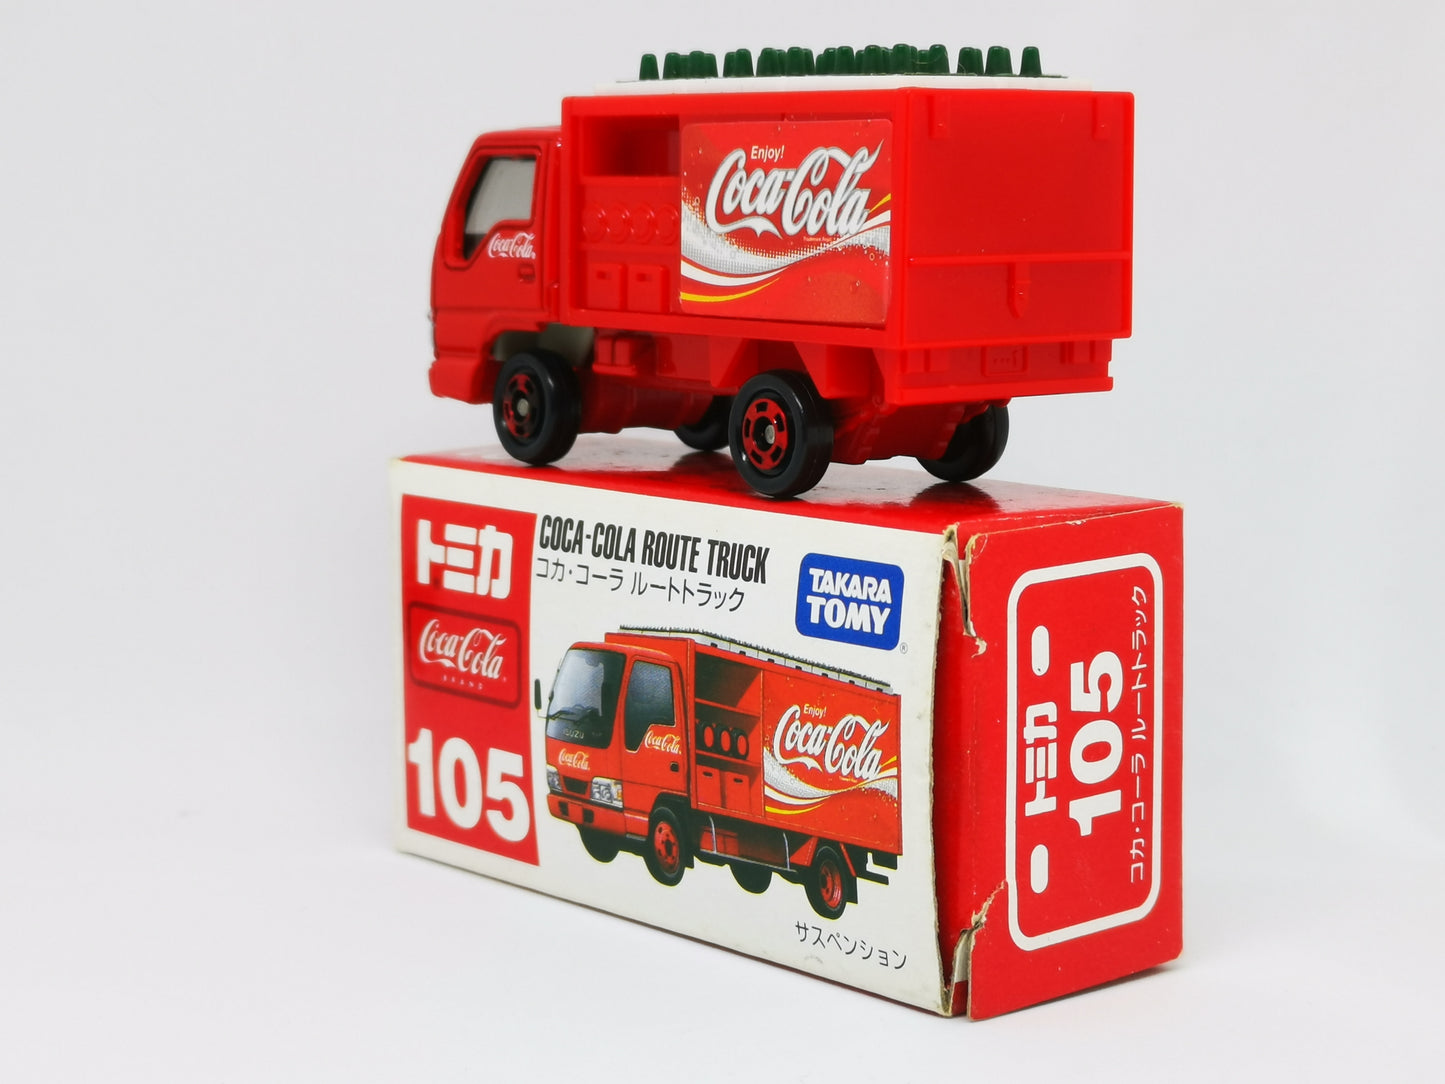 Tomica No.105 Coca Cola Route Truck 1:78 scale